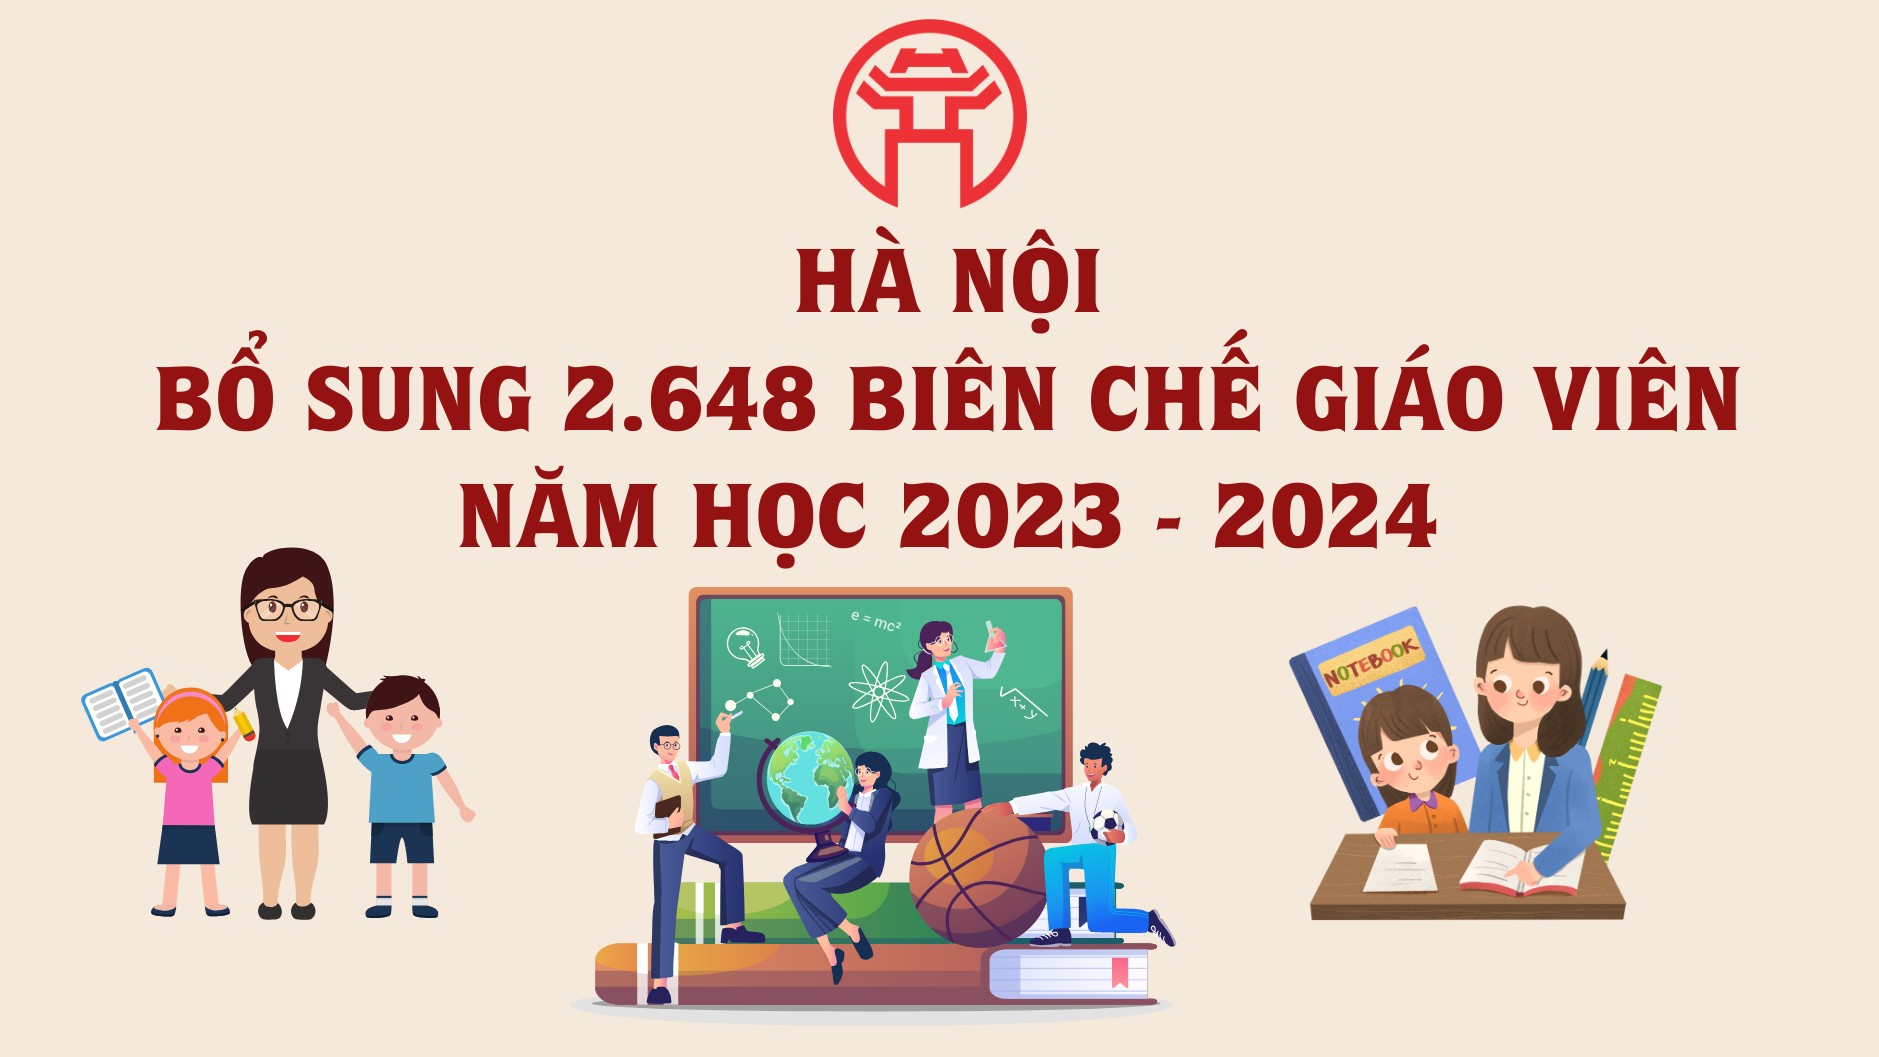 Hà Nội bổ sung 2.648 biên chế giáo viên năm học 2023 - 2024